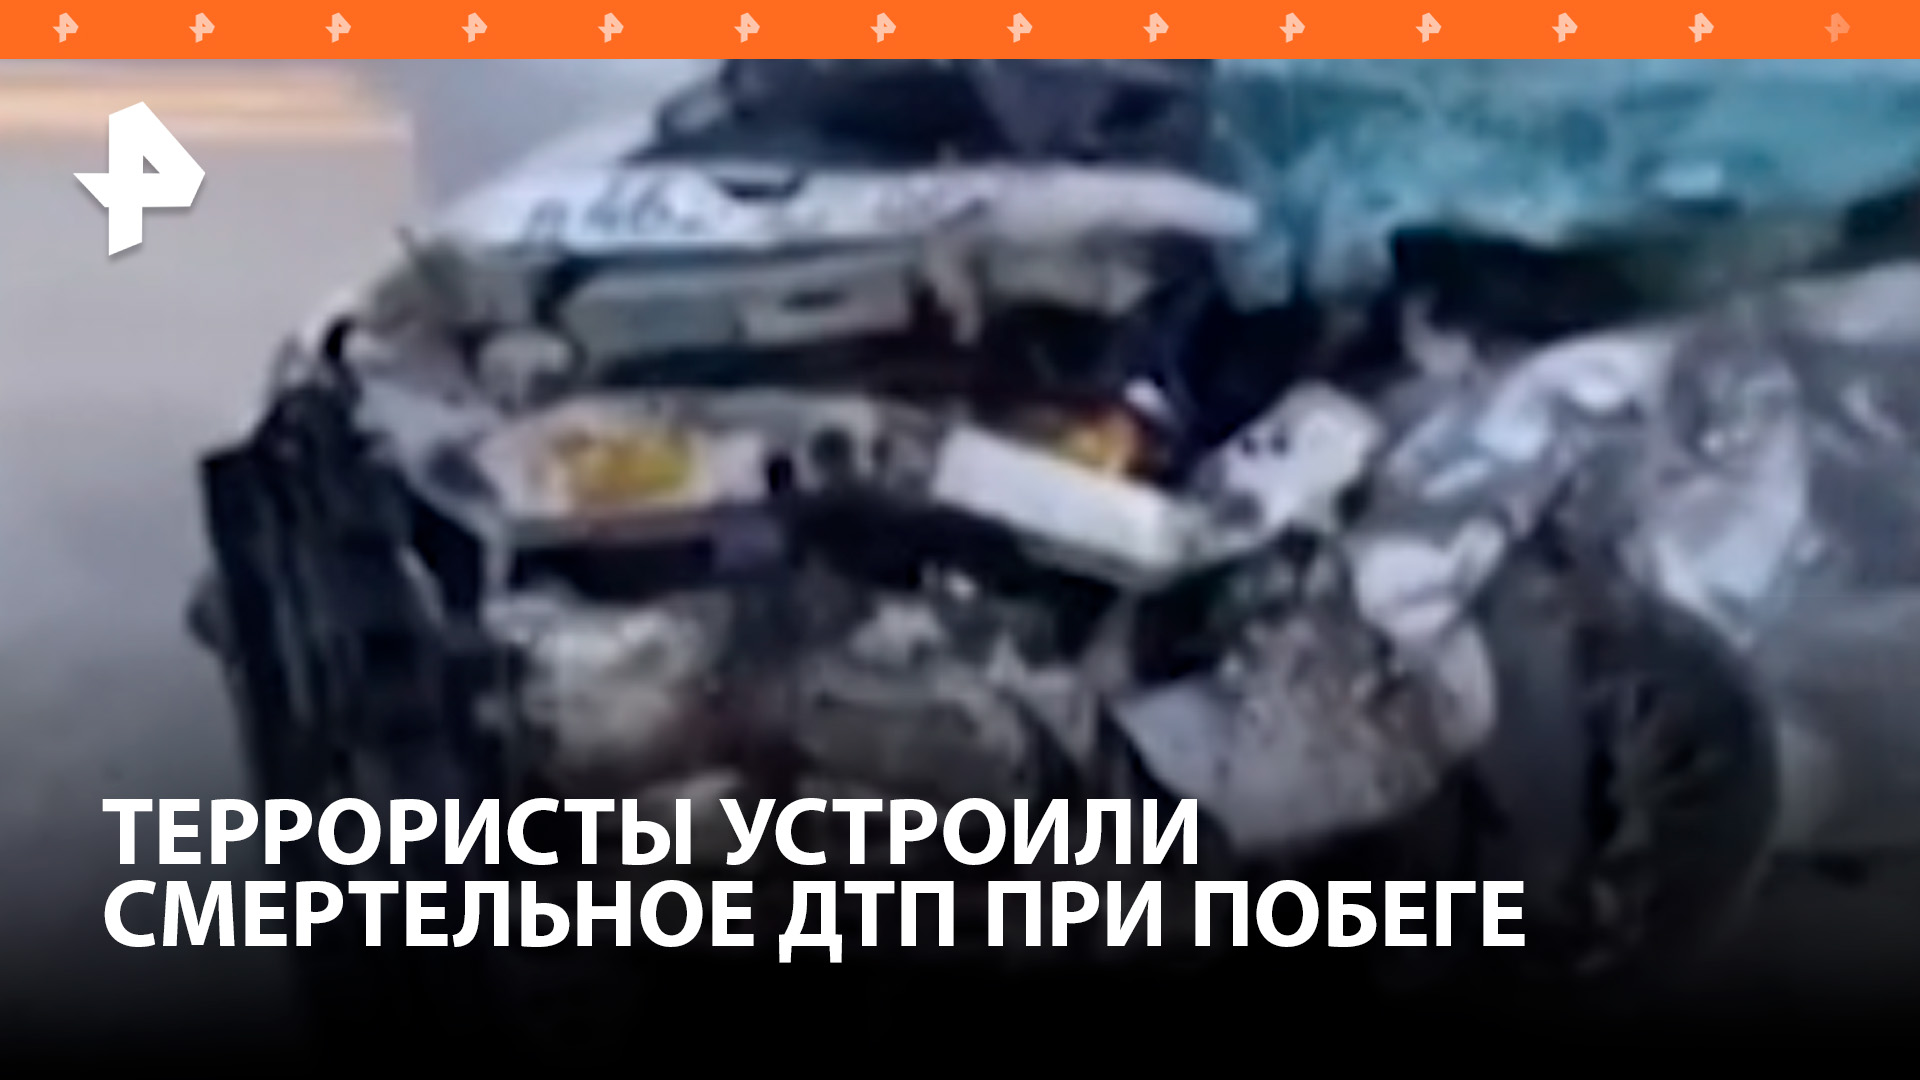 Пытавшиеся скрыться от полиции террористы устроили смертельное ДТП в Ингушетии / РЕН Новости